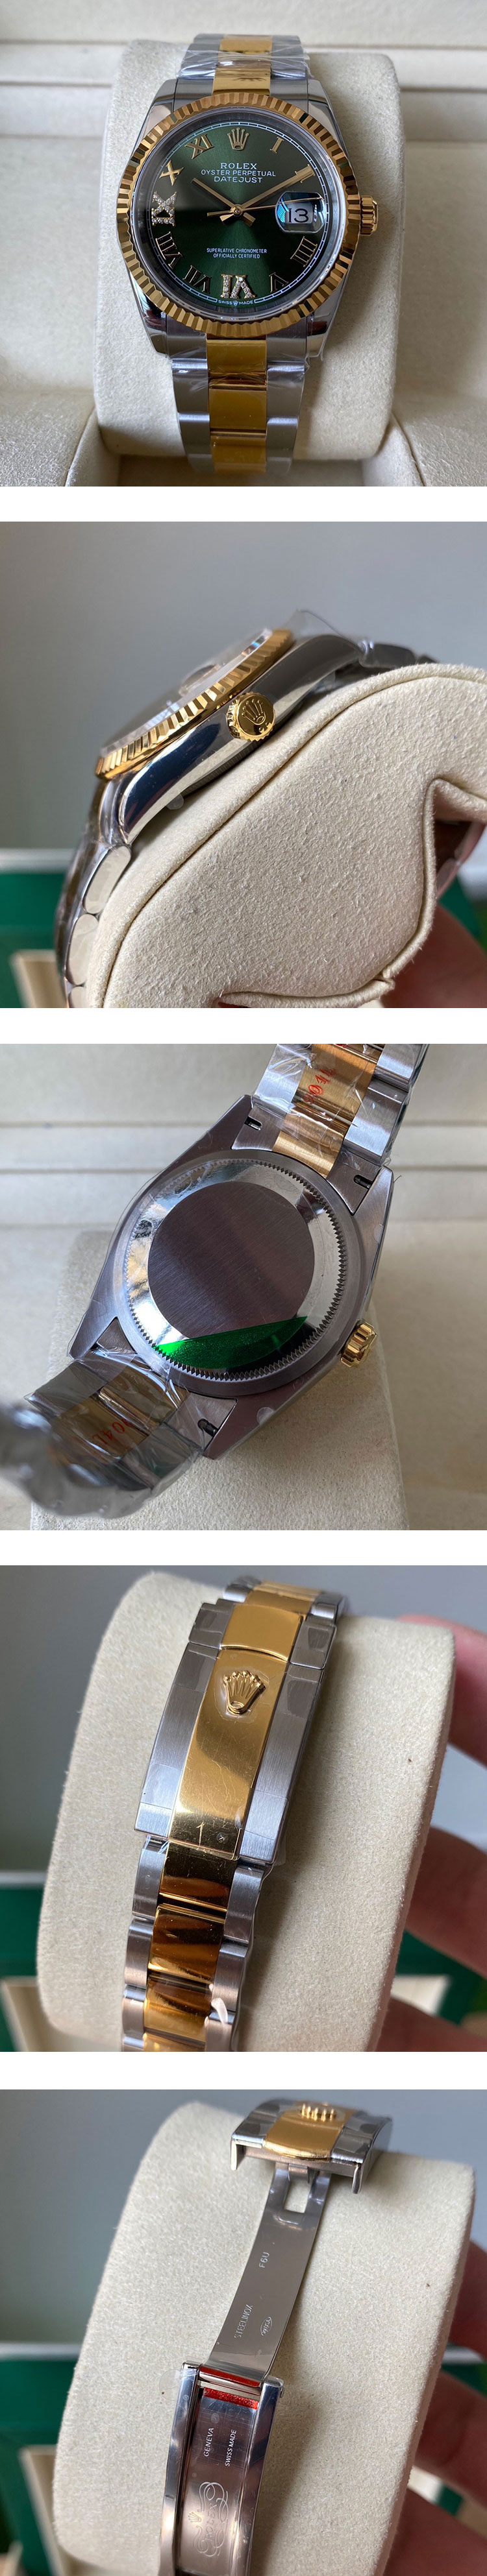 人気ロレックススーパーコピー時計デイトジャスト M126233-0026 オリーブグリーンVI IXダイヤ 36mm